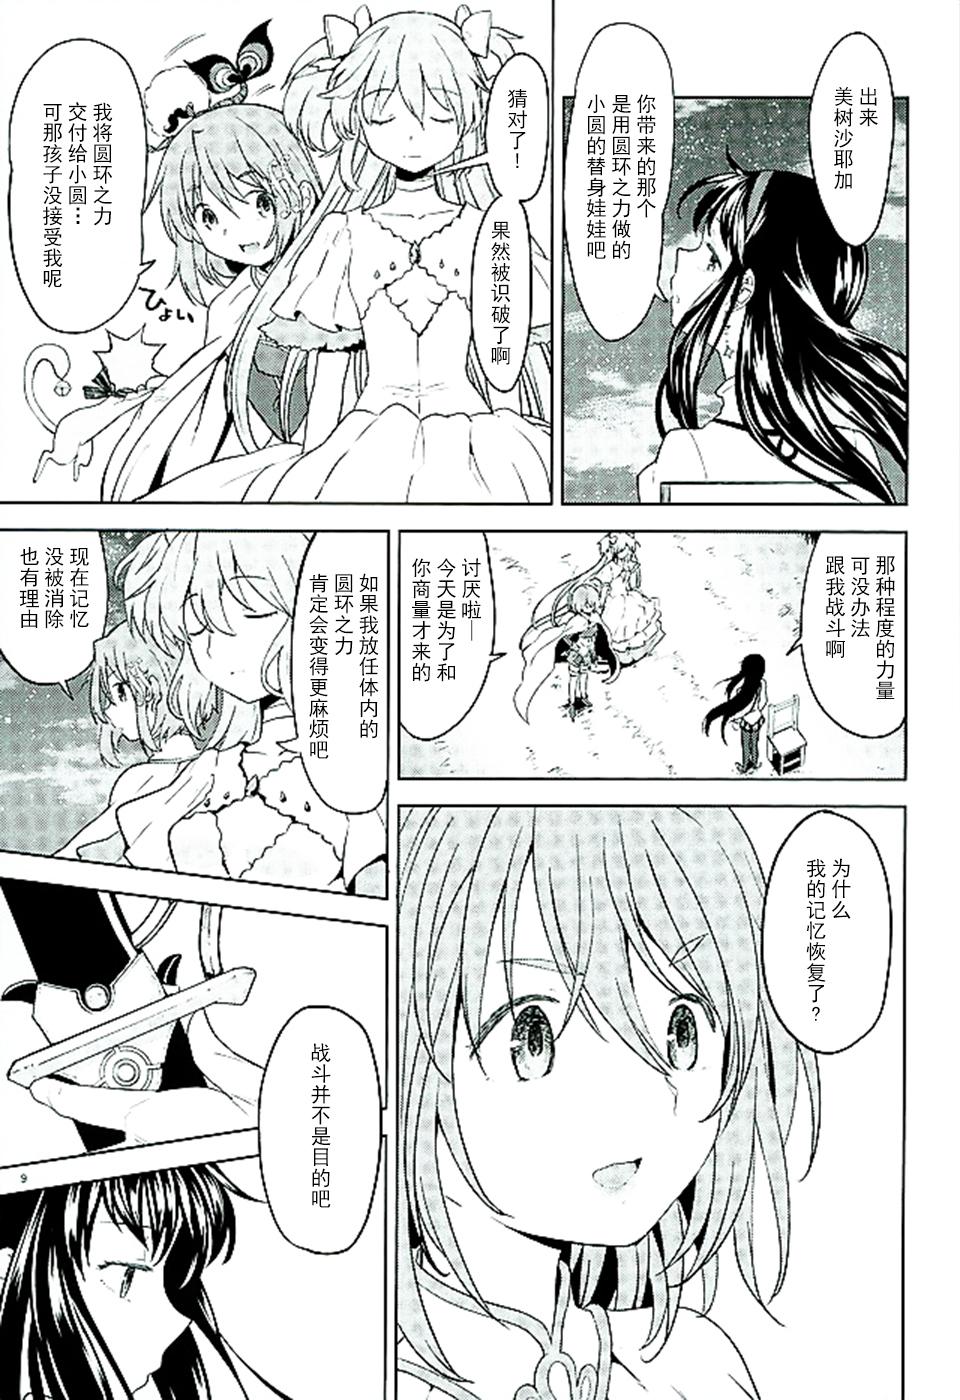 Cruising Honno Isseiki dake Watashi no Gin no Niwa - Puella magi madoka magica Tetas Grandes - Page 11